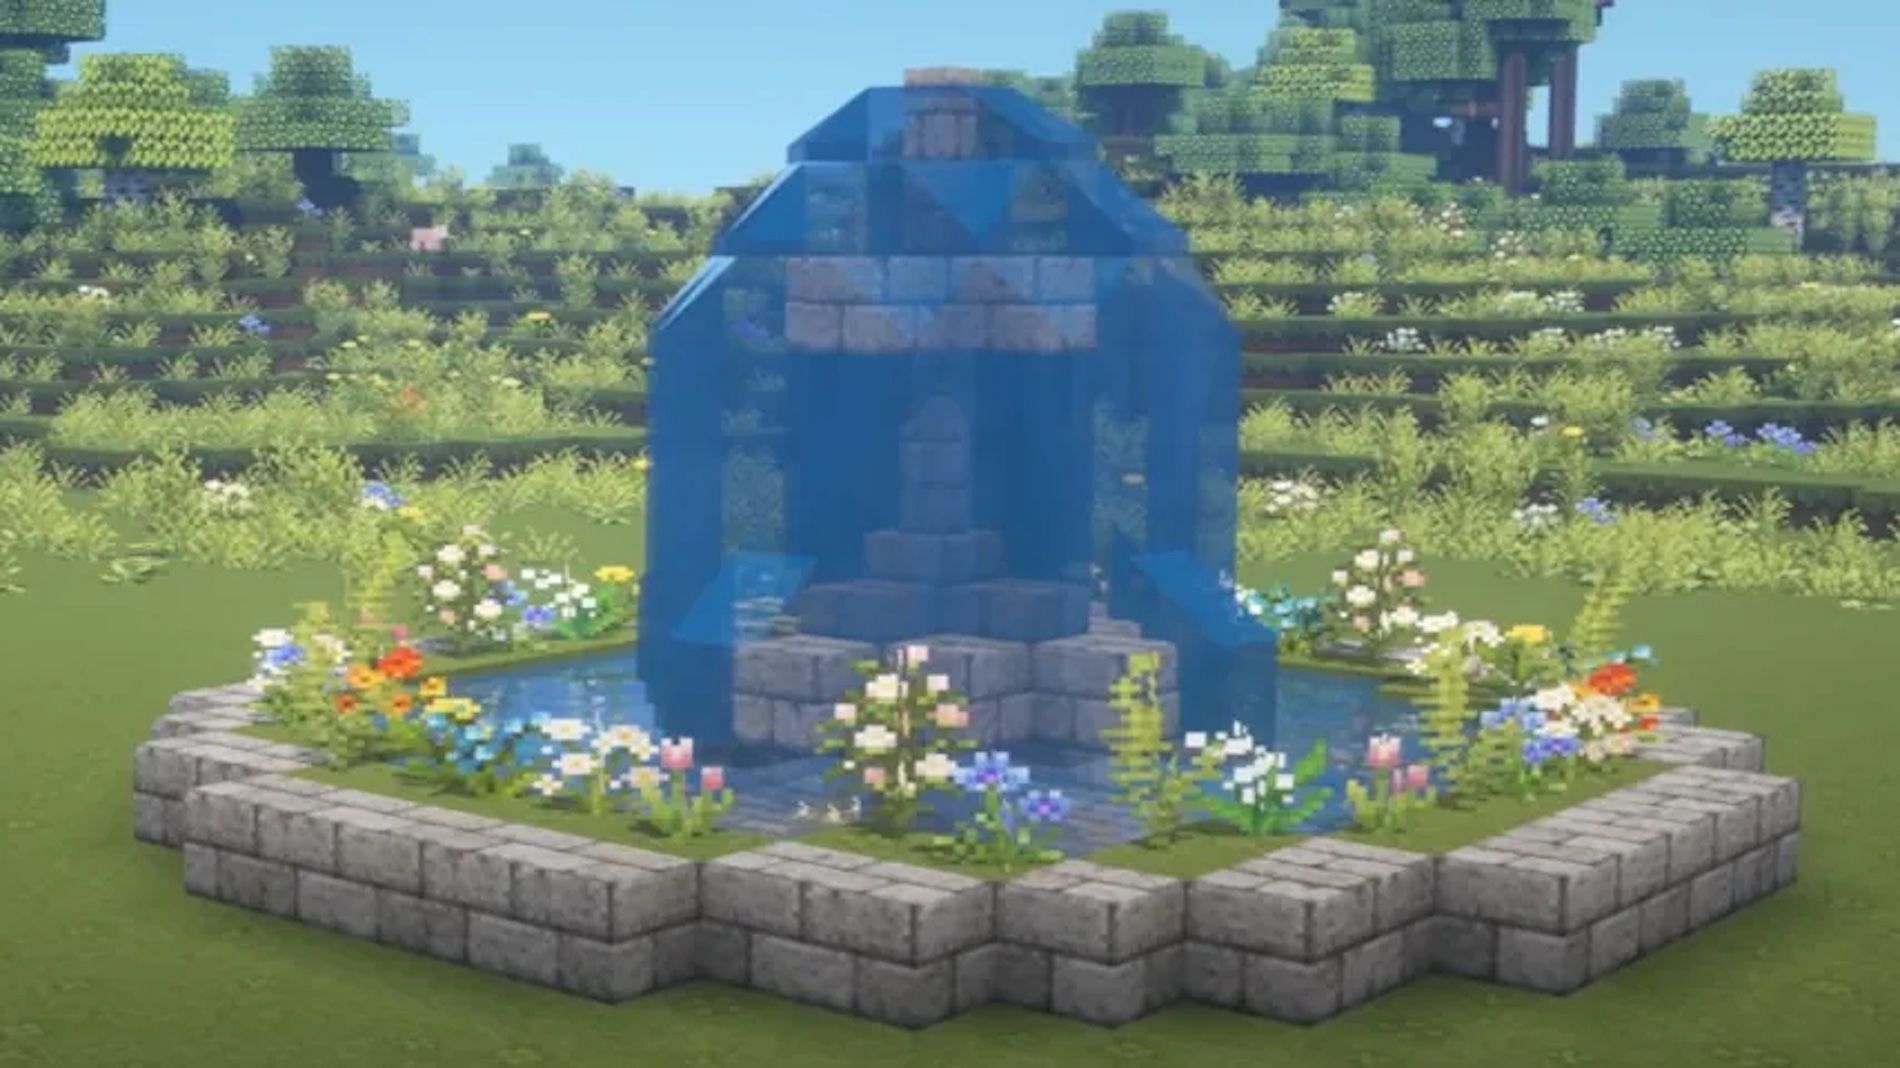 A fountain in a garden (Image via Kelpie The Fox/YouTube)